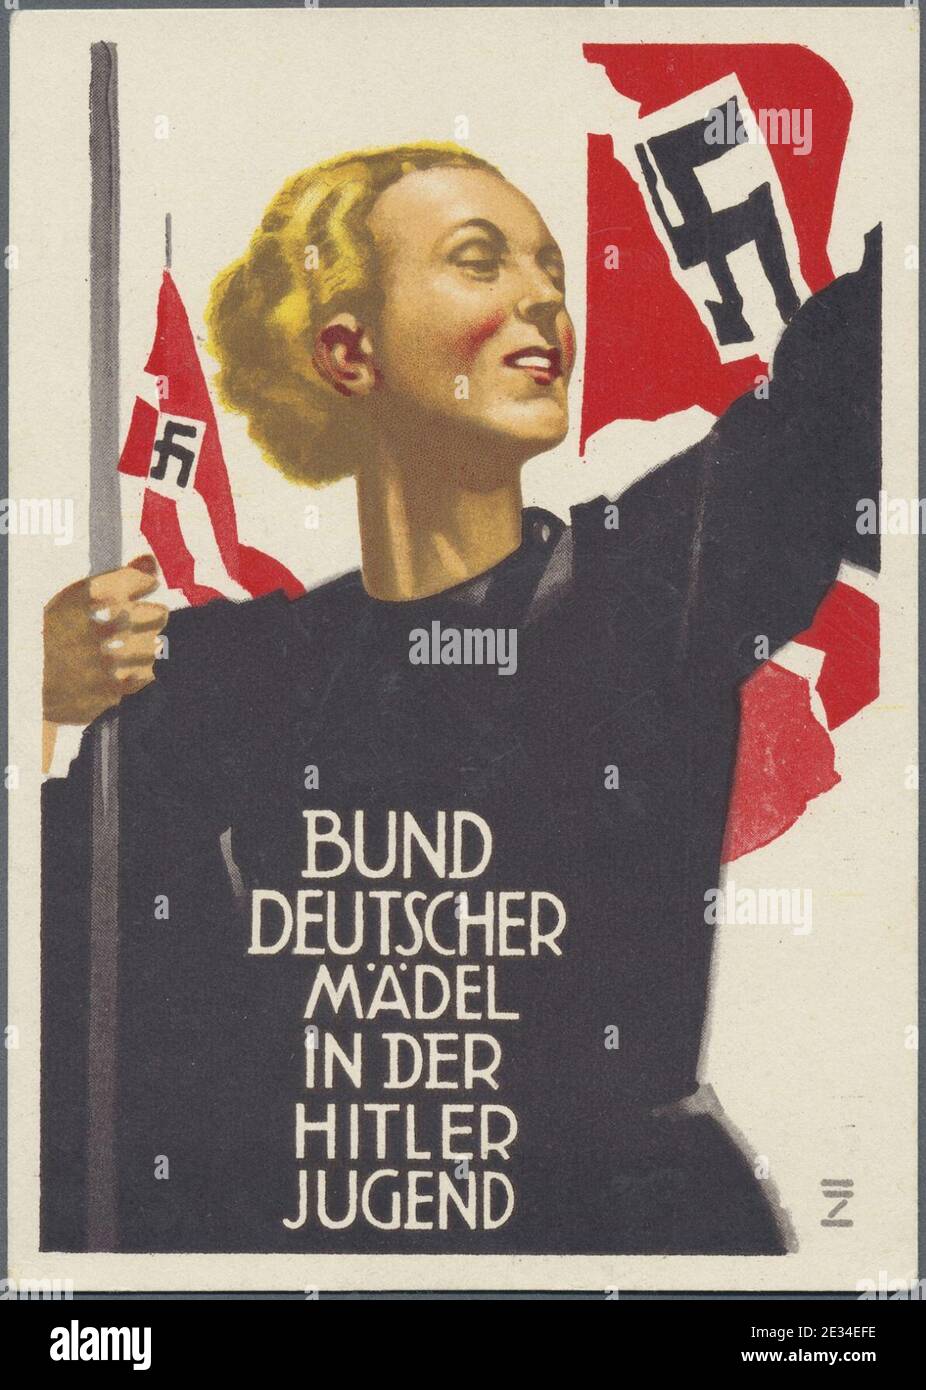 Ludwig HOHLWEIN Bund Deutscher Mädel in der Hitler Jugend BDM Mitgliederwerbung Hitler-Jugend 1933 Ansichtskarte Propaganda Drittes Reich Nazi Germany Picture postcard Stock Photo